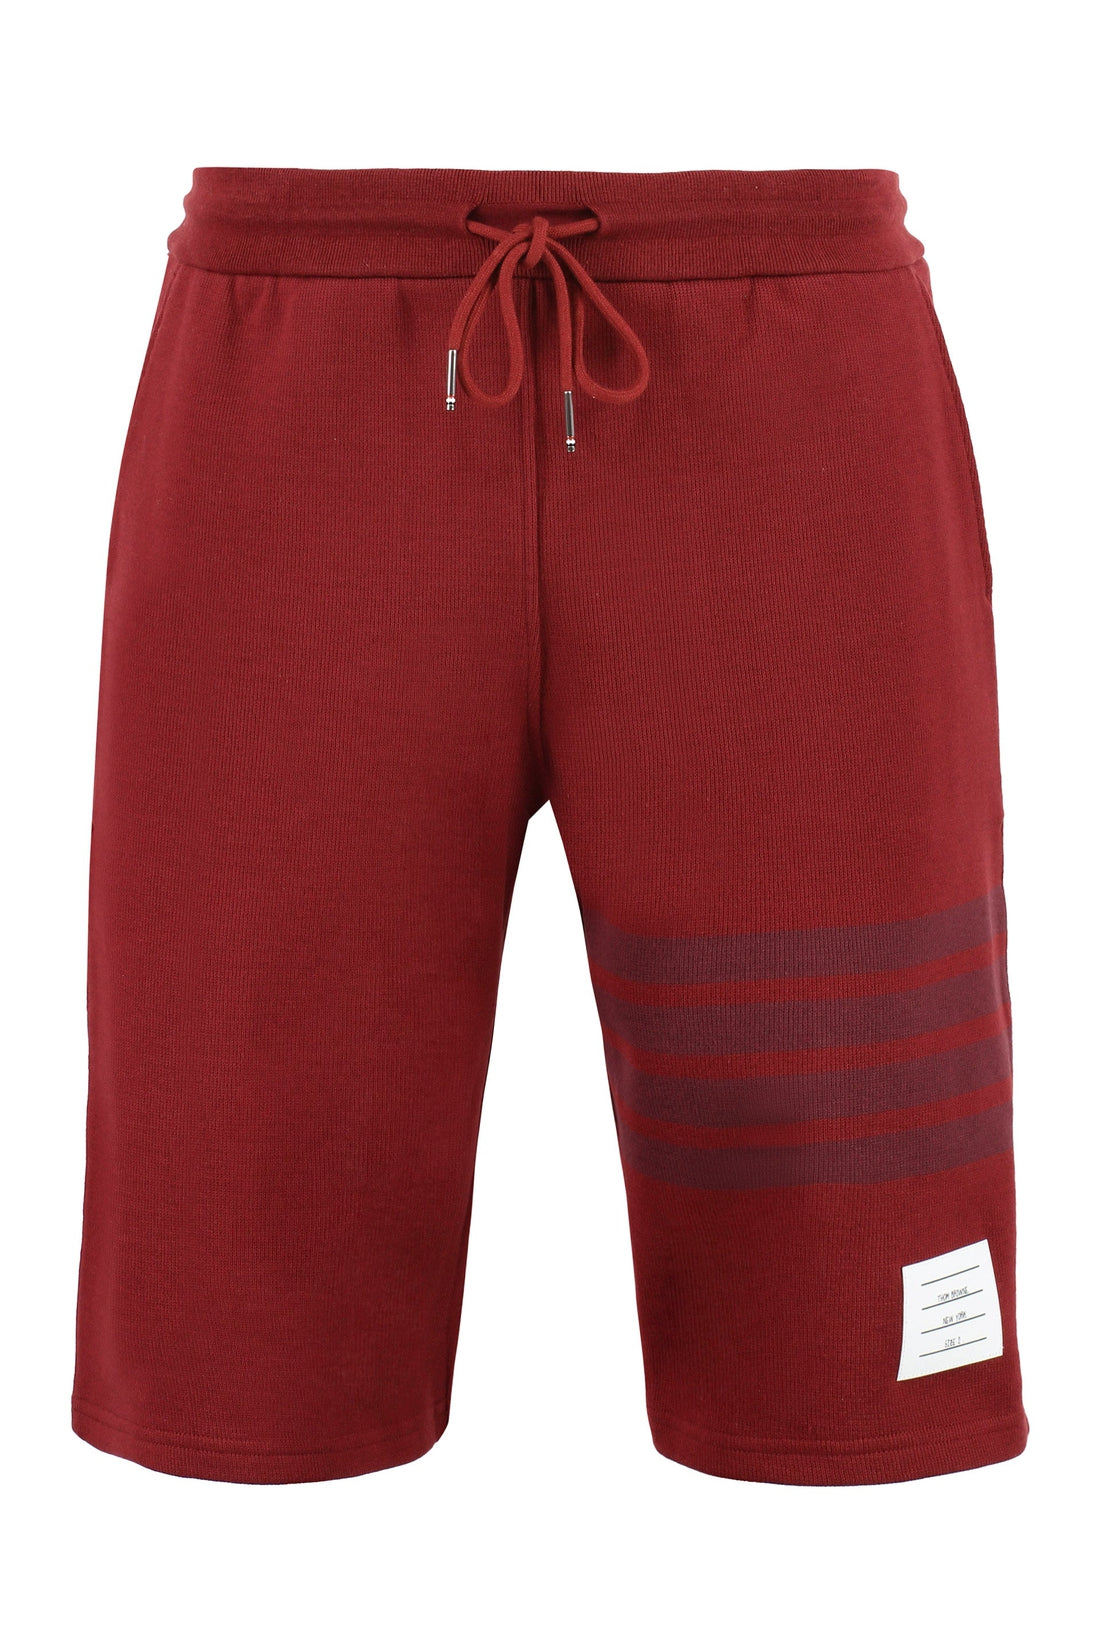 Thom Browne-OUTLET-SALE-Fleece shorts-ARCHIVIST